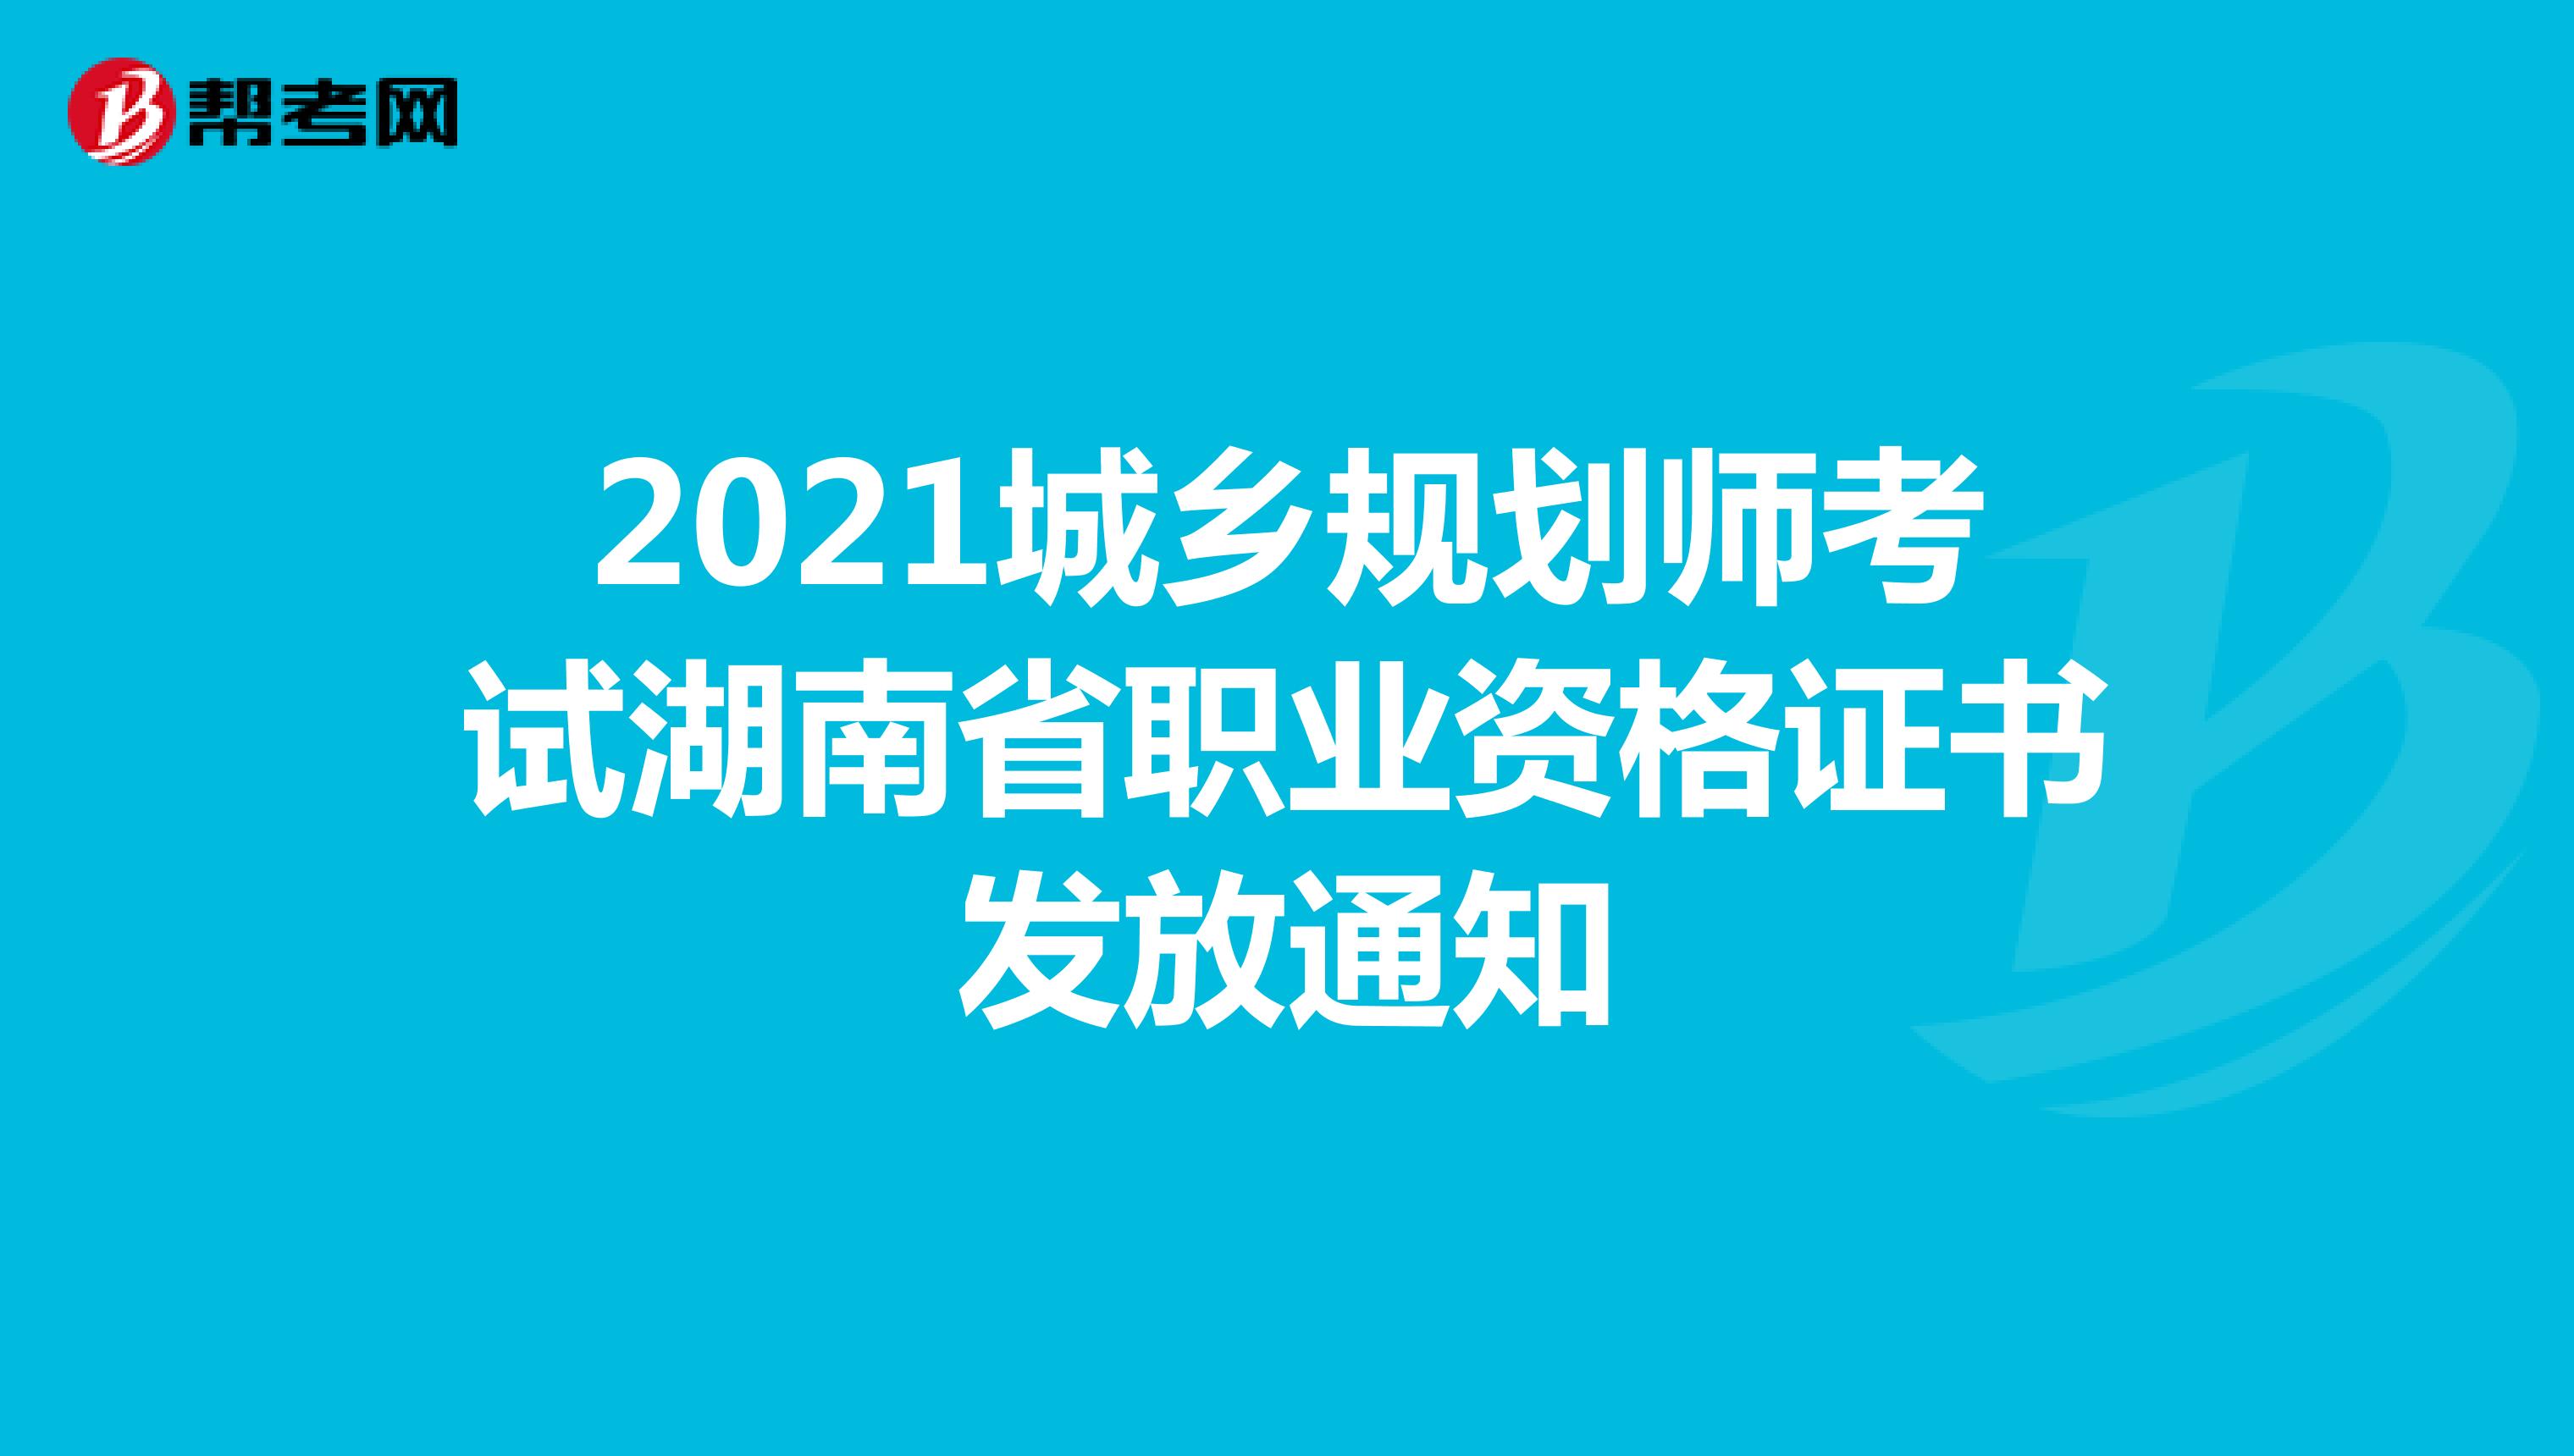 2021城乡规划师考试湖南省职业资格证书发放通知